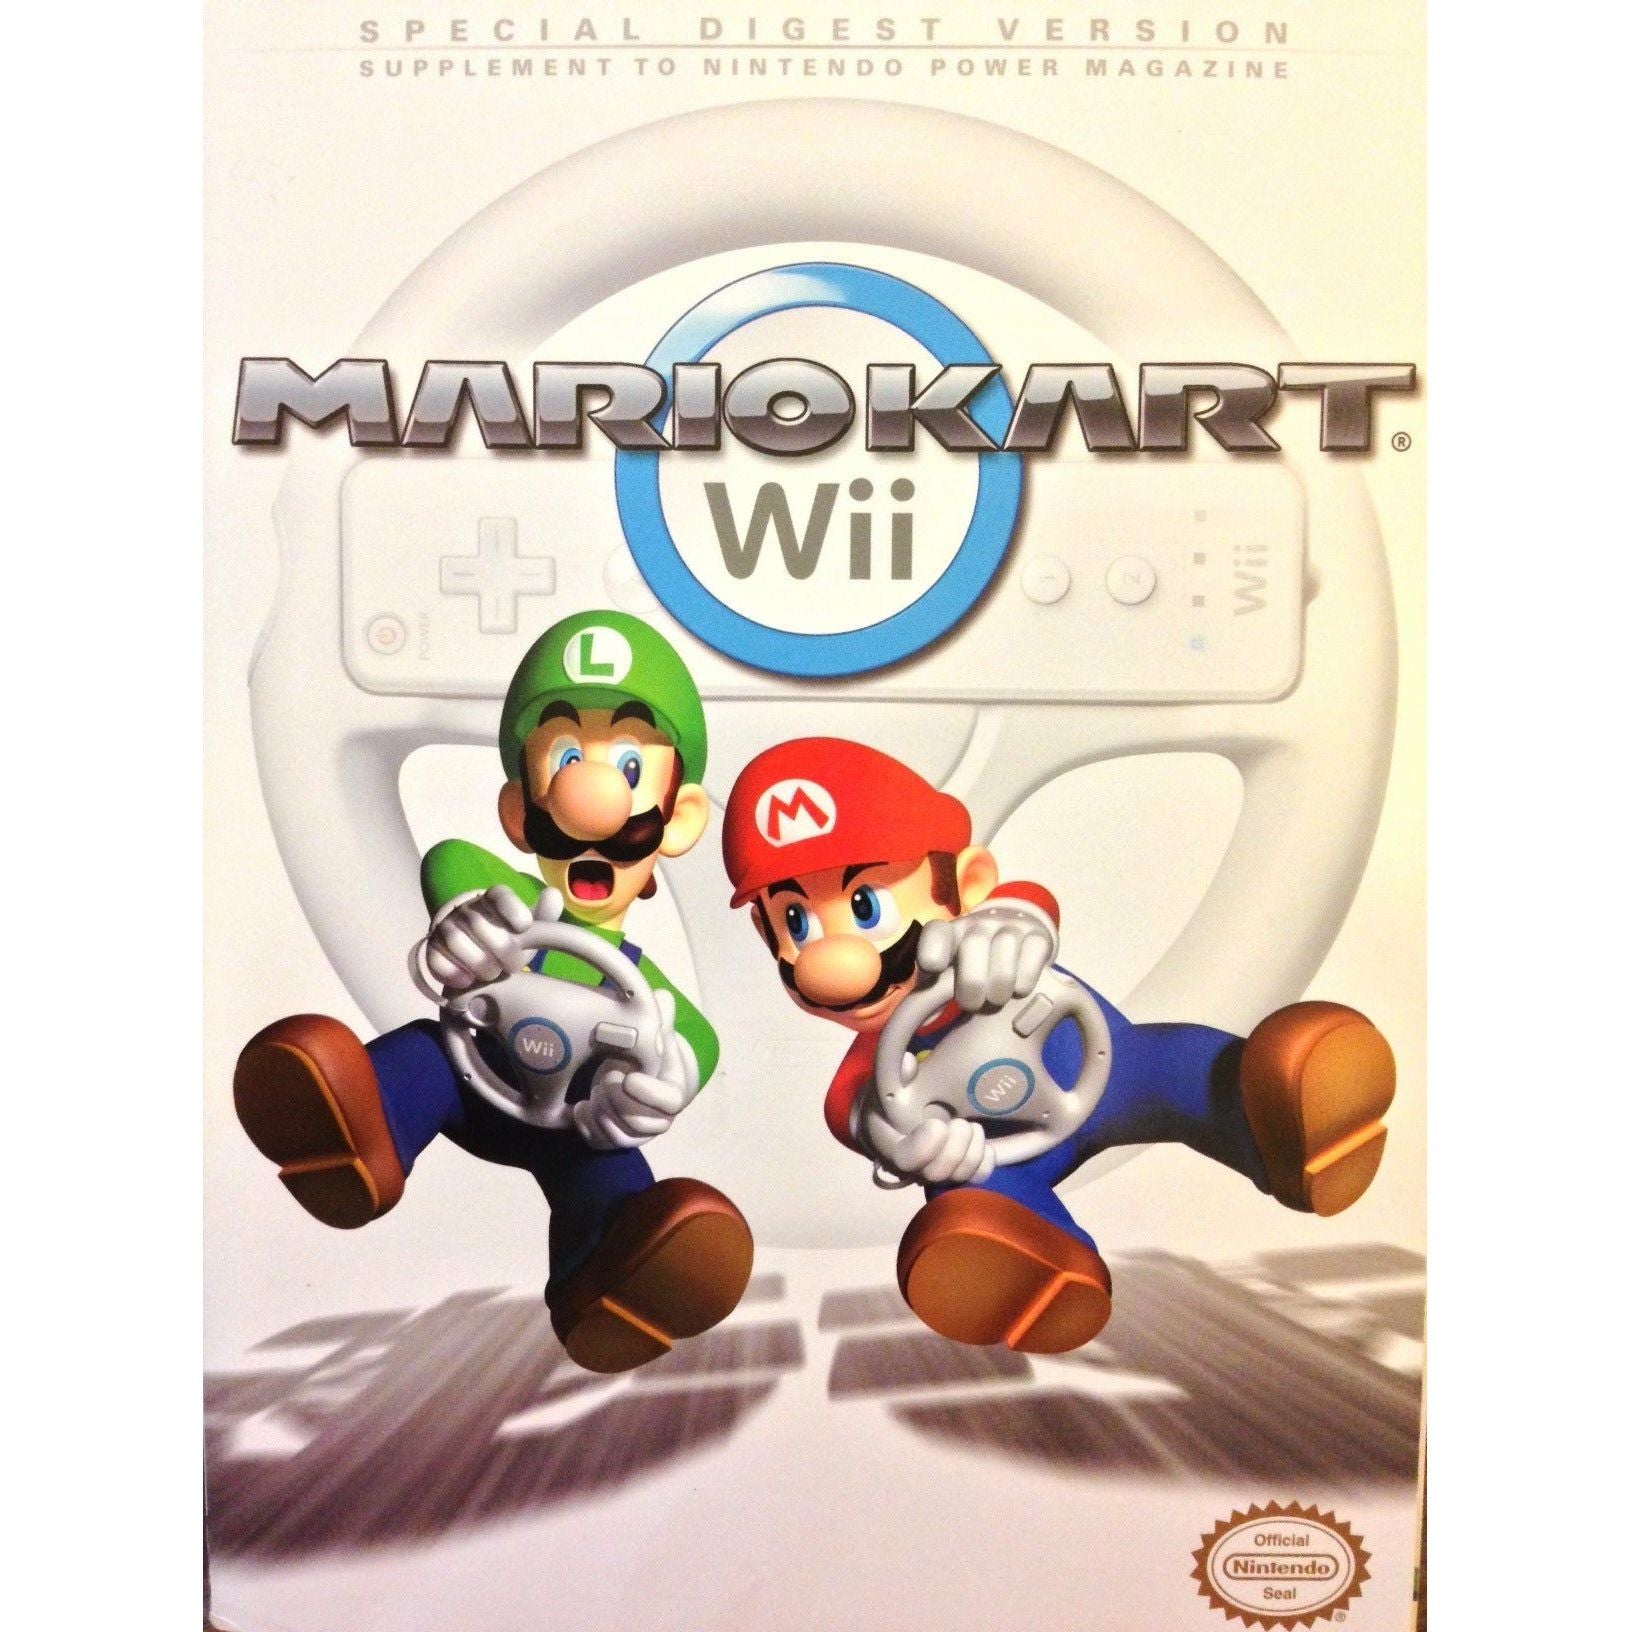 STRAT - Mario Kart Wii Special Digest Version